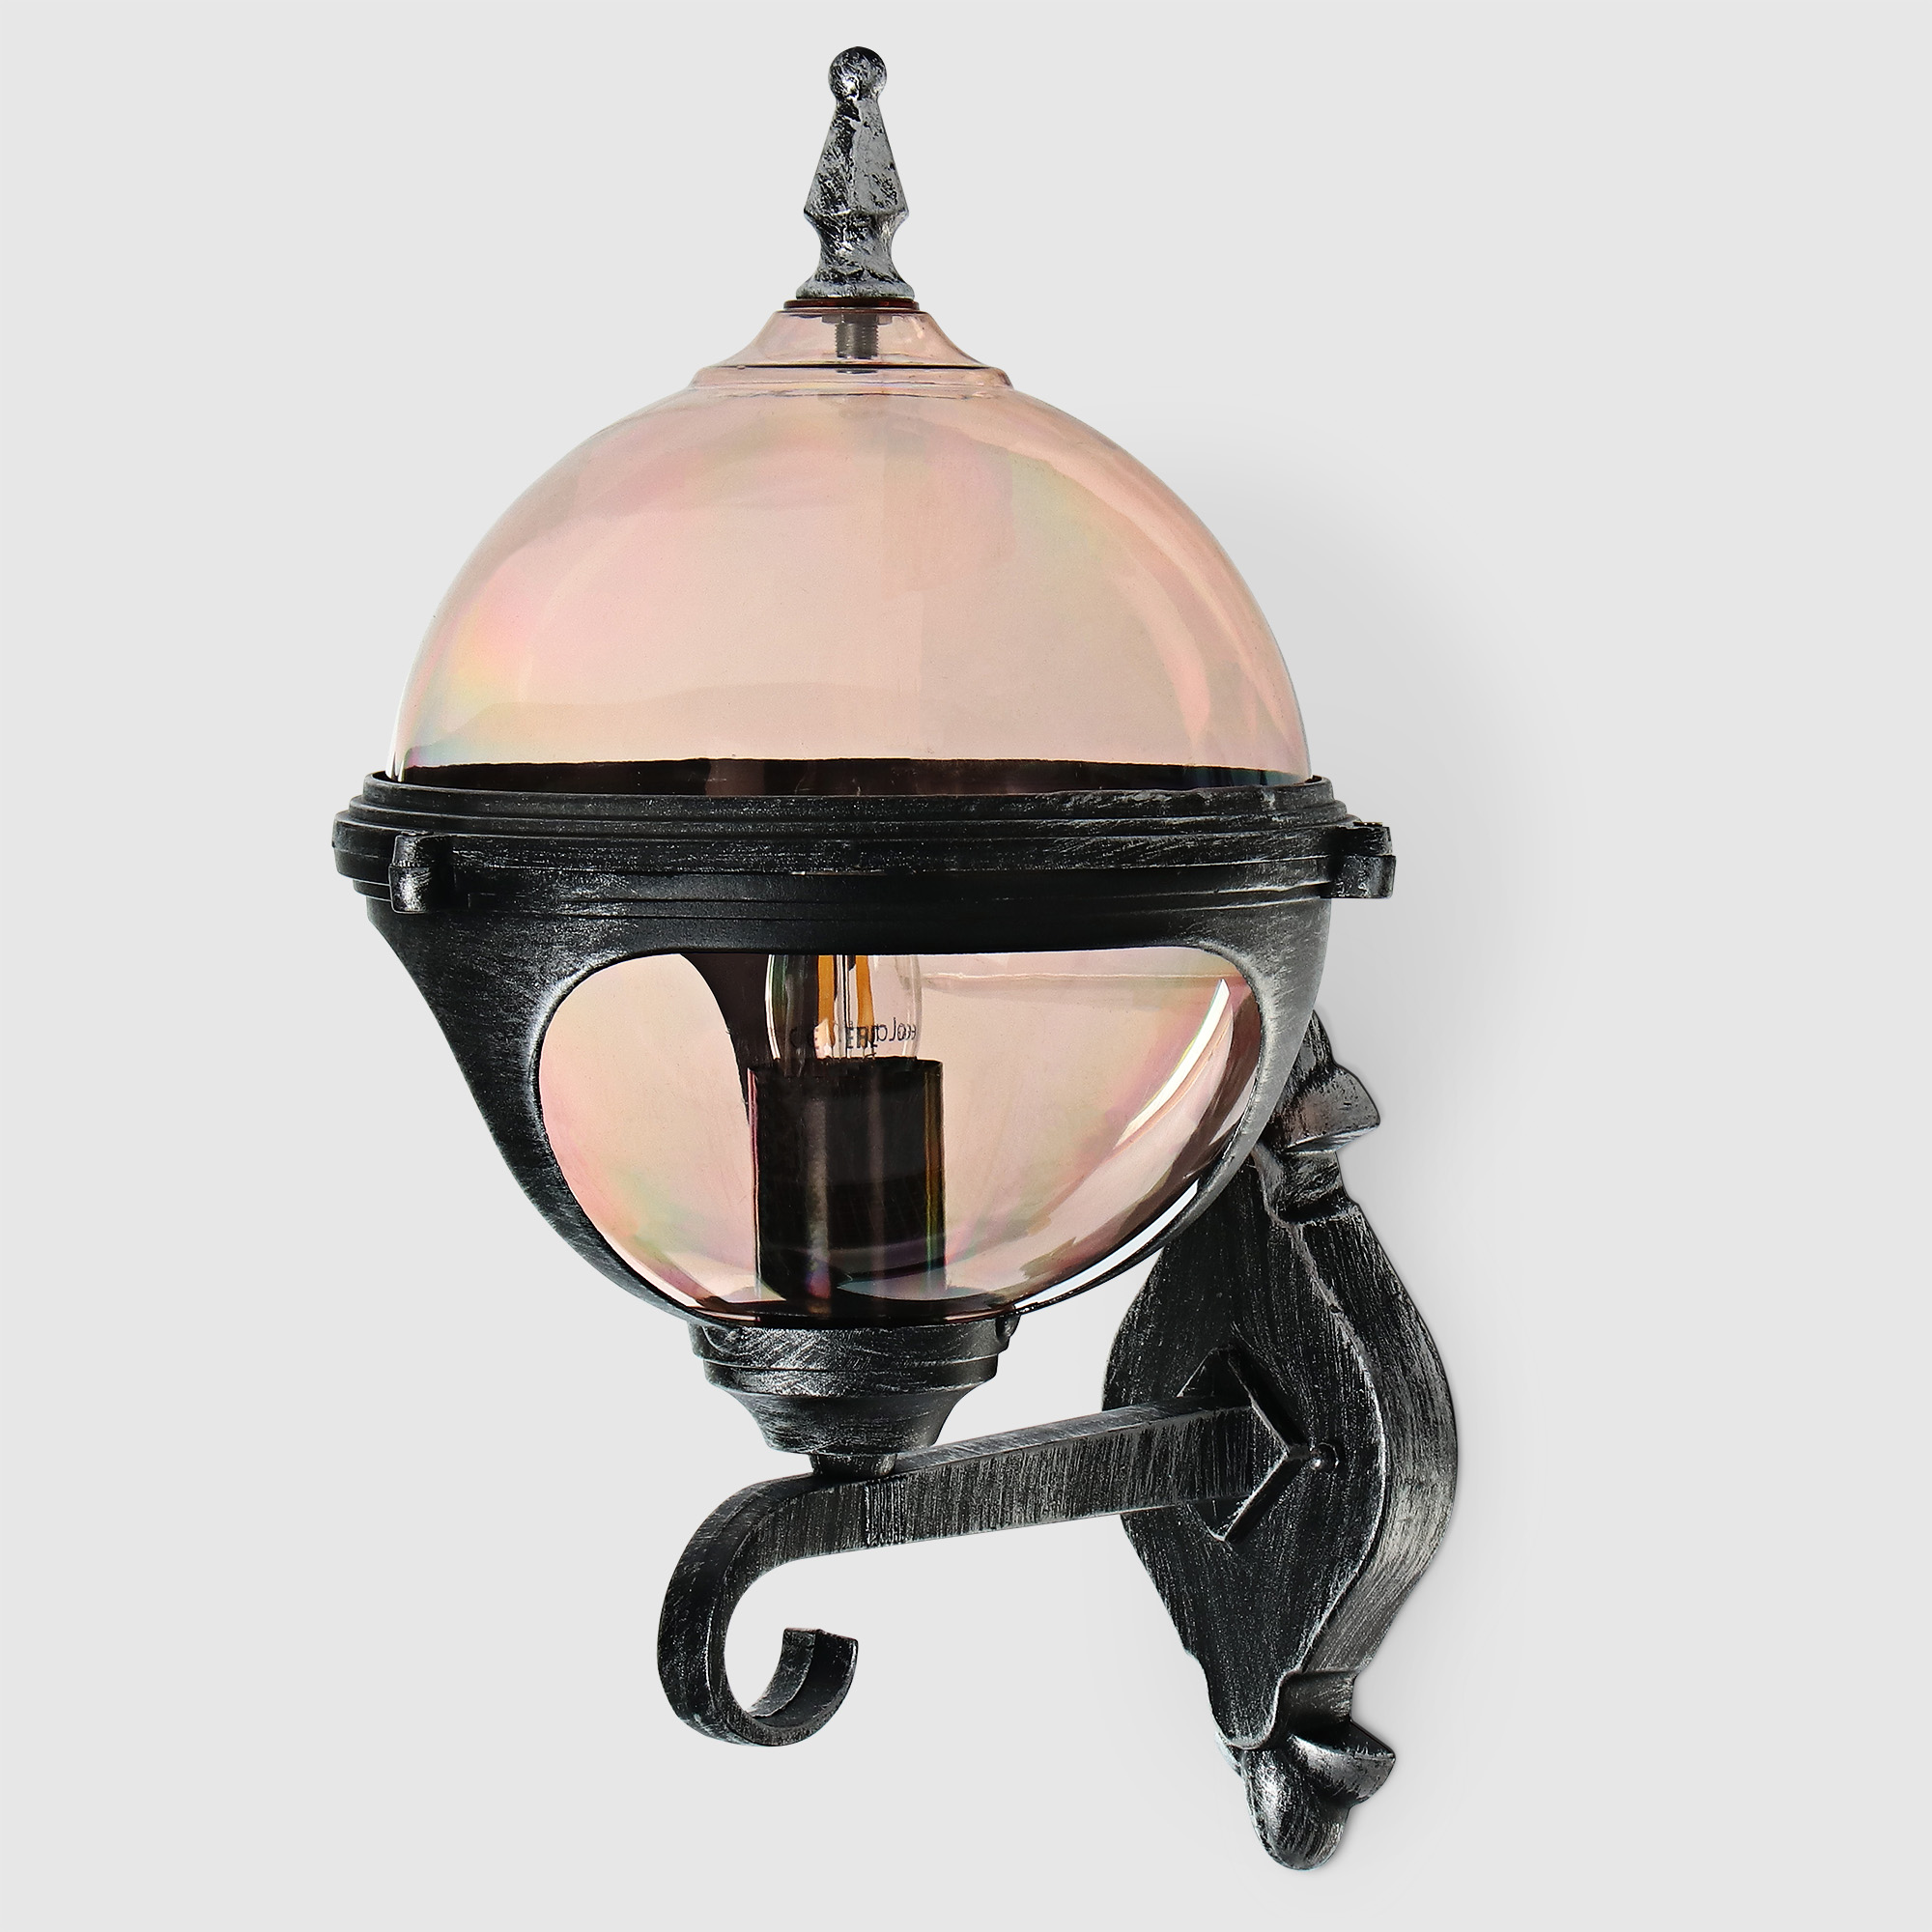 Светильник настенный Amber Lamp 8262B садовый, черное серебро, цвет шампань - фото 1